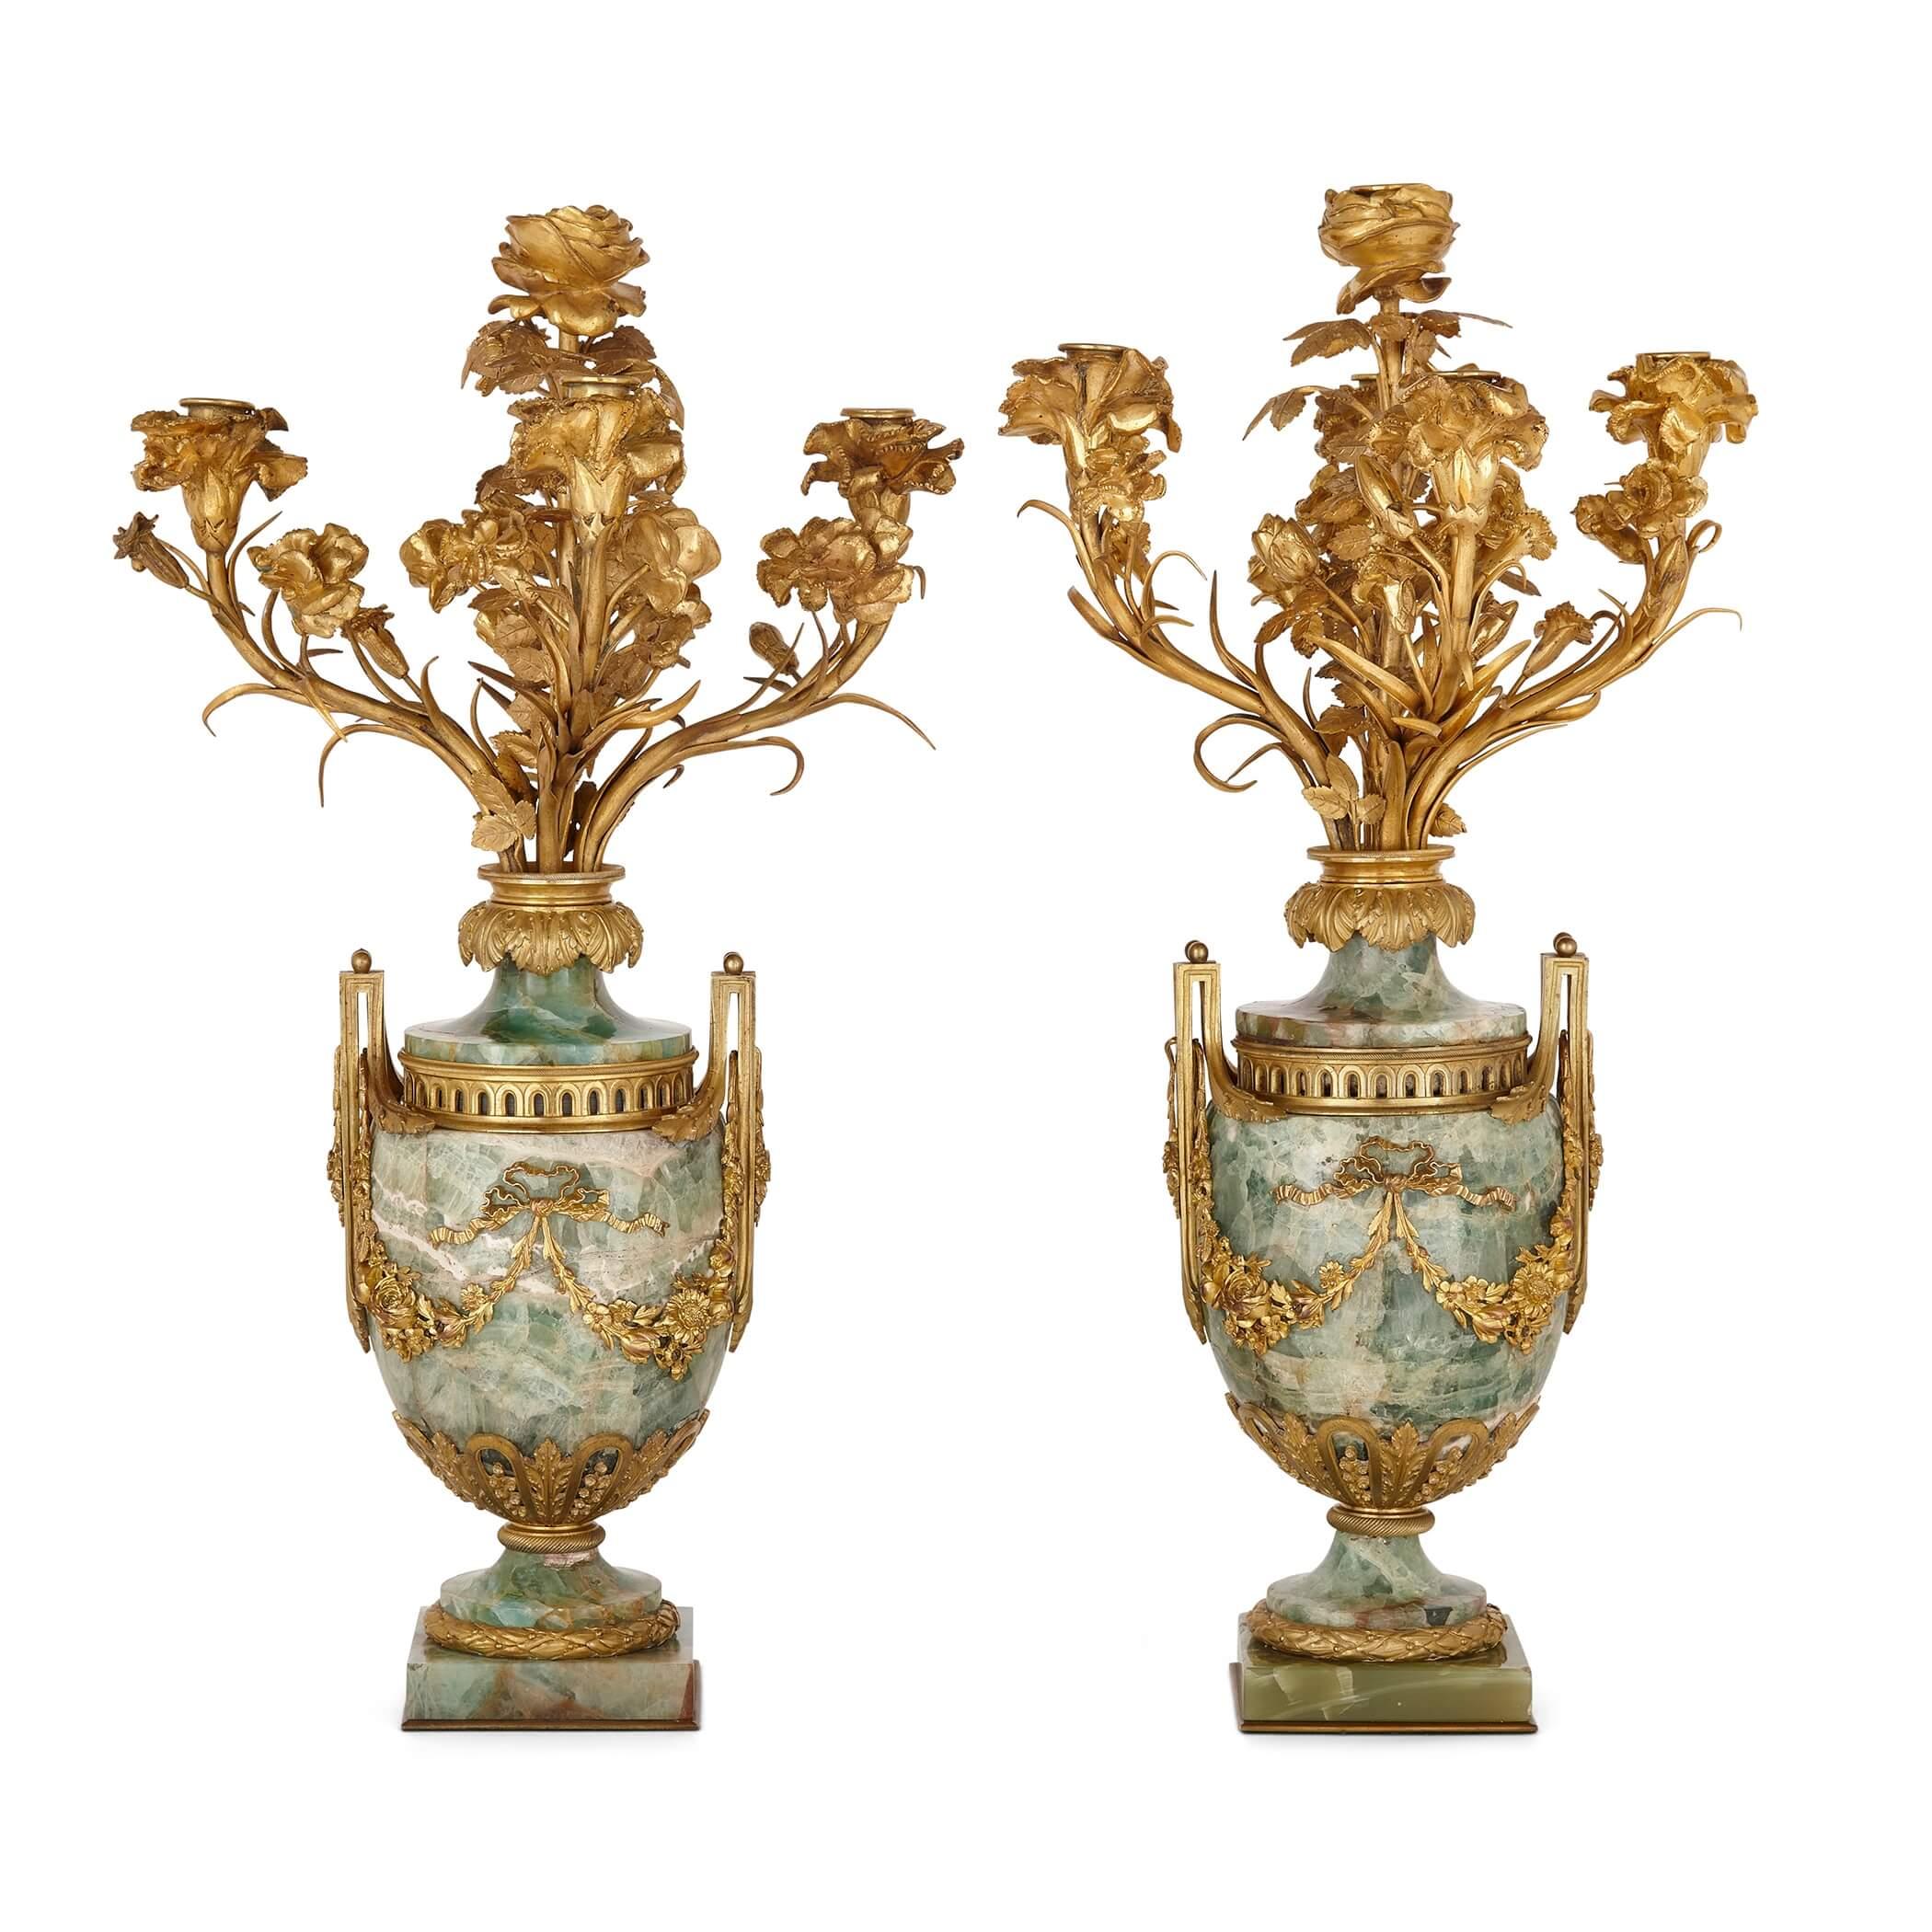 Zwei große vergoldete Bronzeleuchter im Louis-XVI-Stil mit Flussspat
Französisch, 19. Jahrhundert
Maße: Höhe 61cm, Breite 35cm, Tiefe 34cm

Diese schönen Leuchter im Stil des Neoklassizismus und des Louis XVI sind aus dem seltenen und